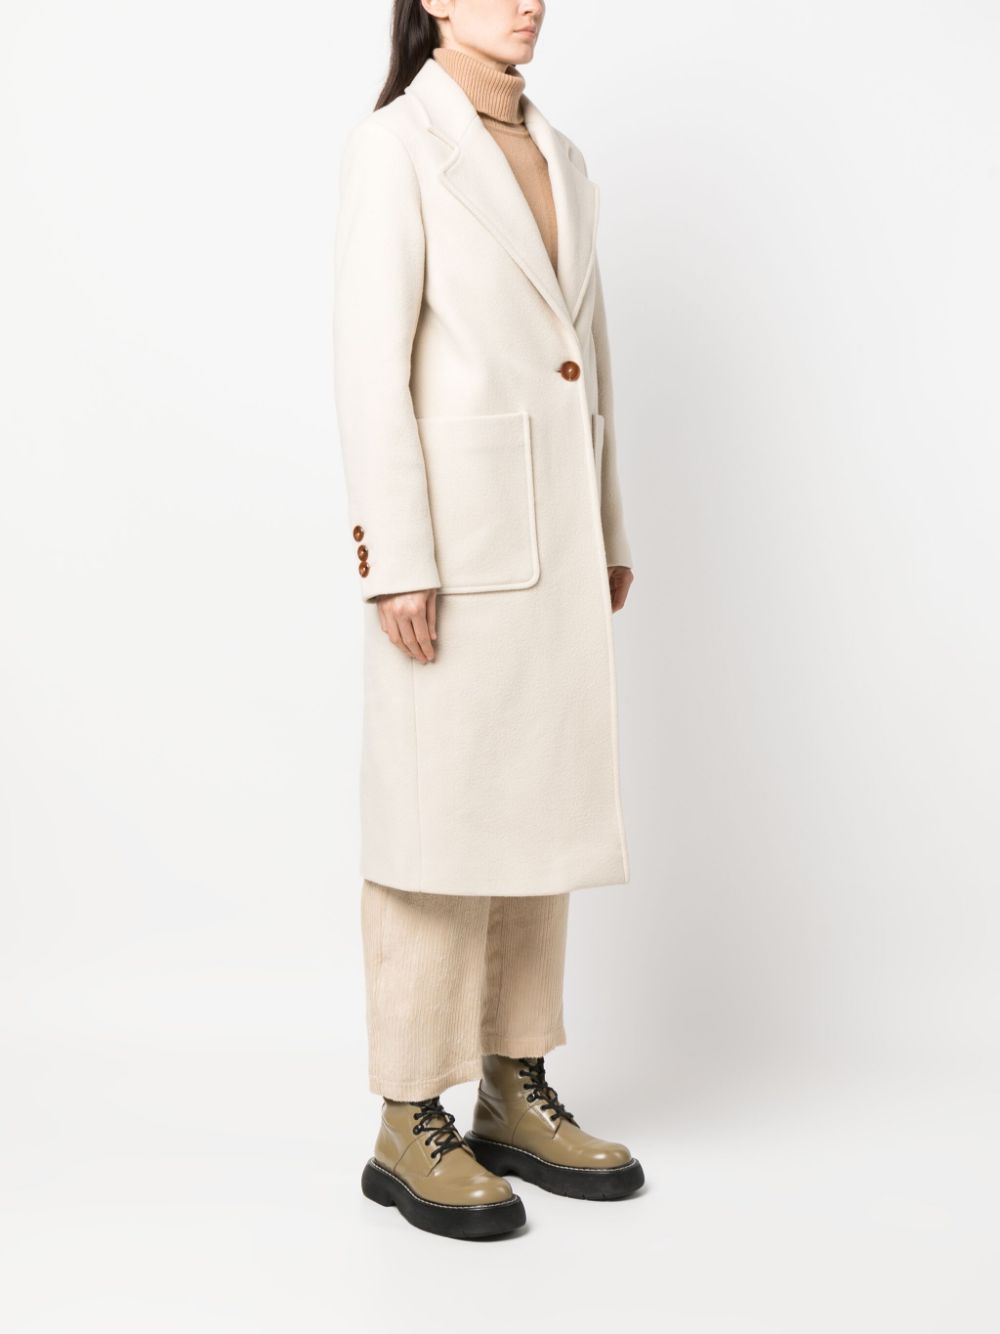 Manteau femme blanc crème à simple boutonnage